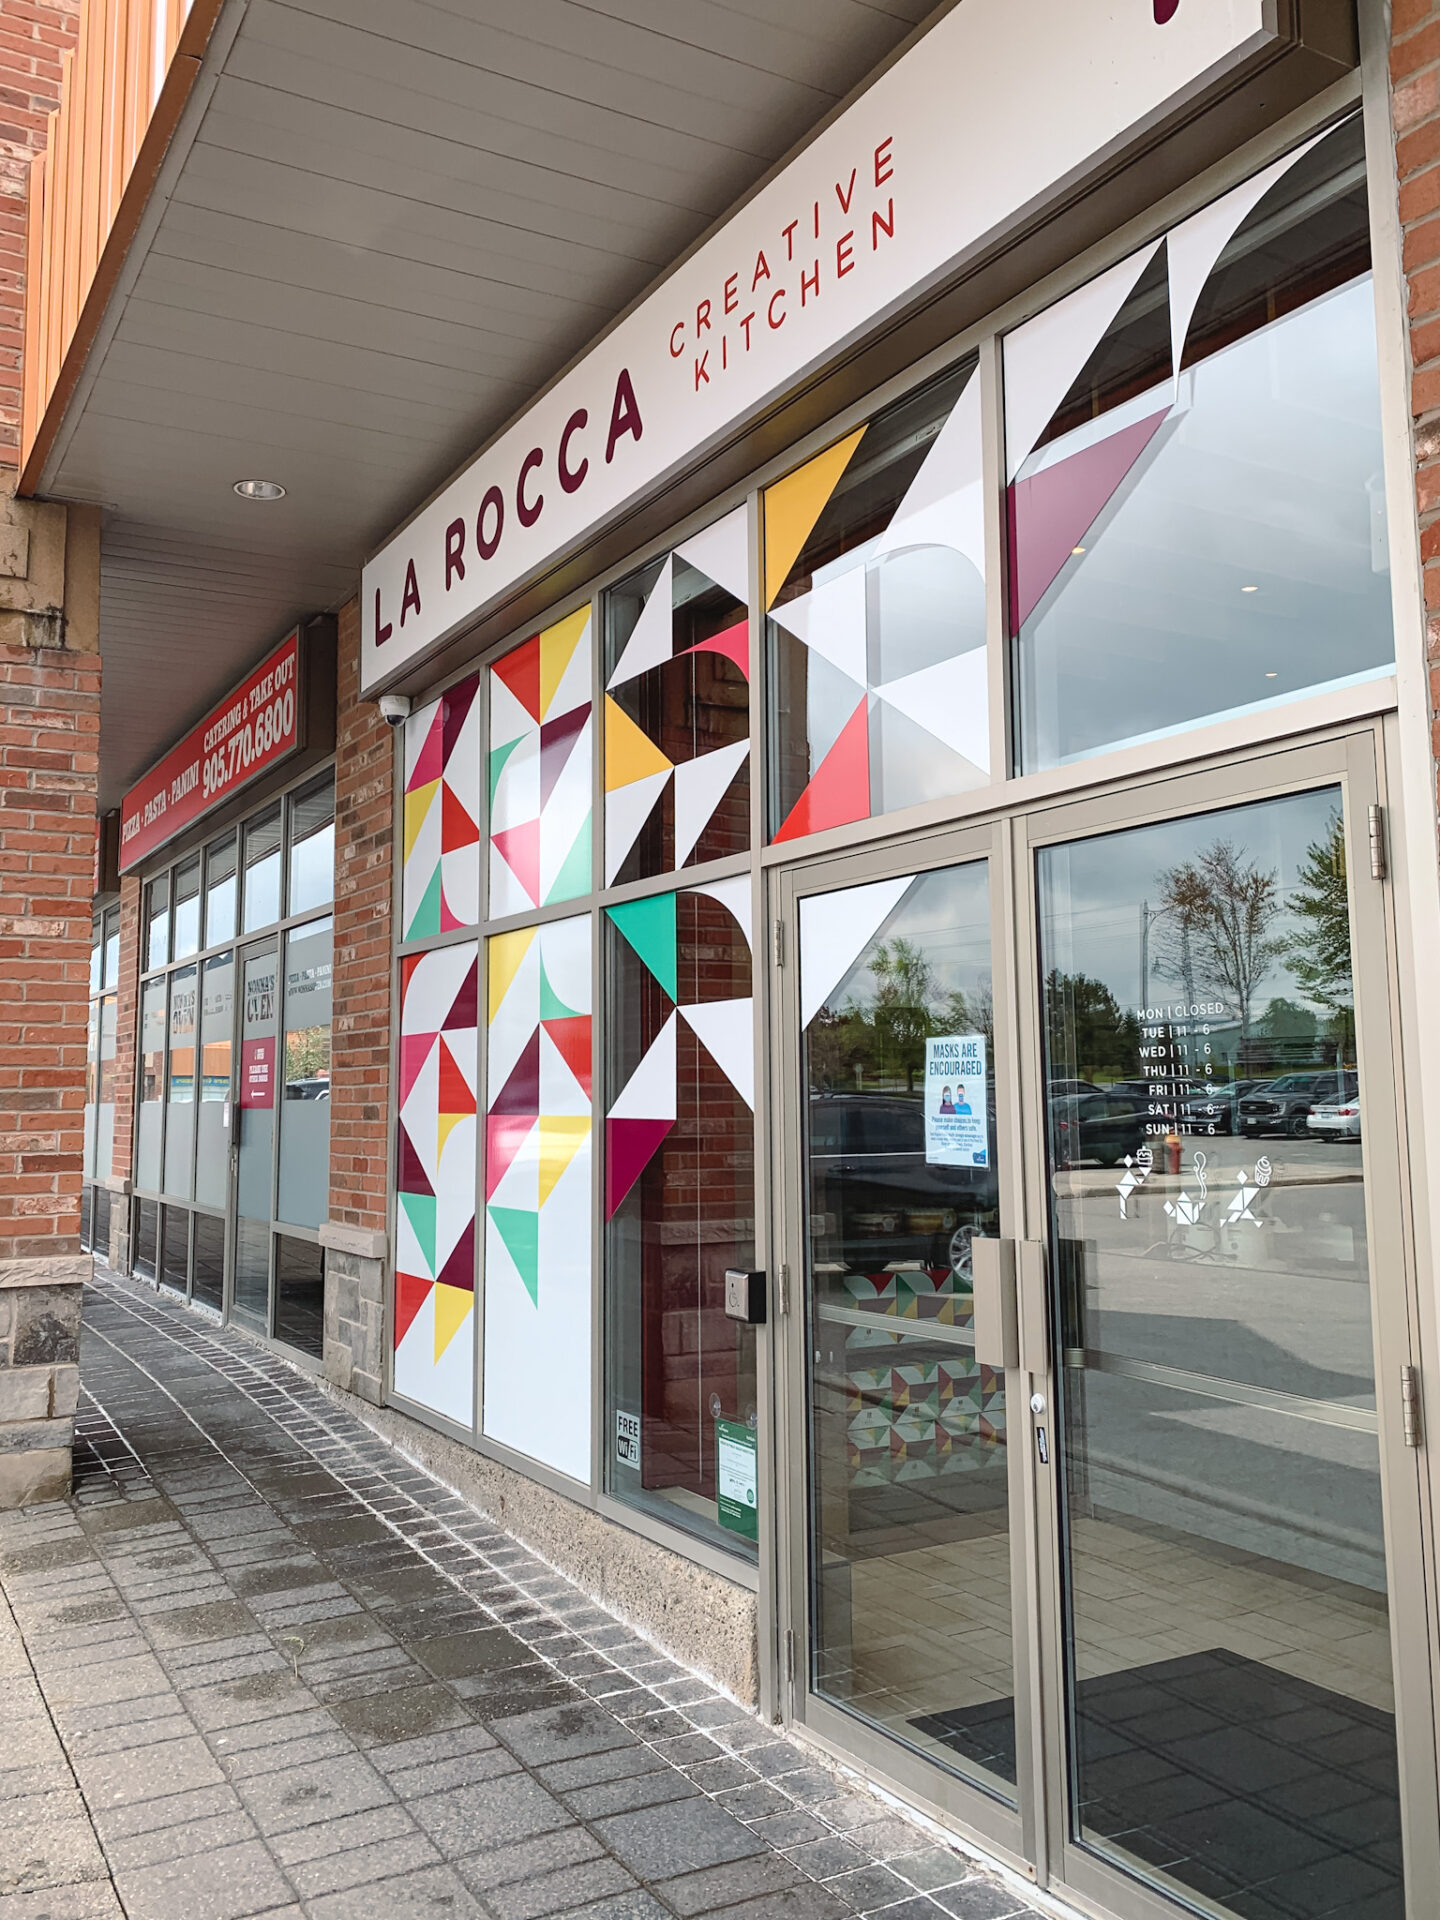 La Rocca Creative Kitchen in Richmond Hill, Ontario